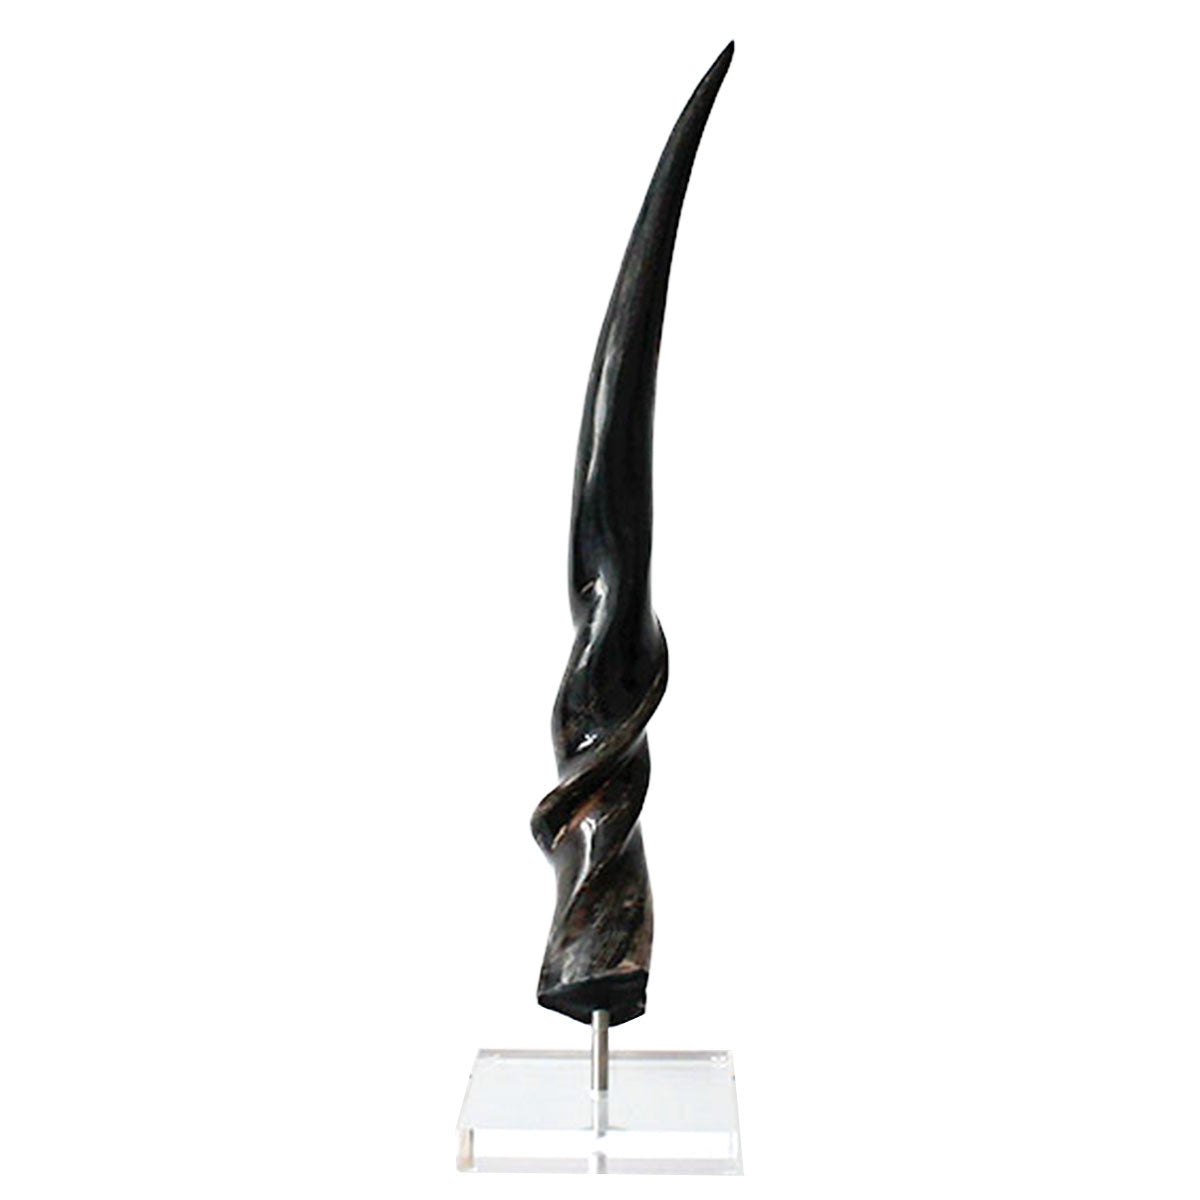 Polished elan horn doubles as a modern sculpture. 